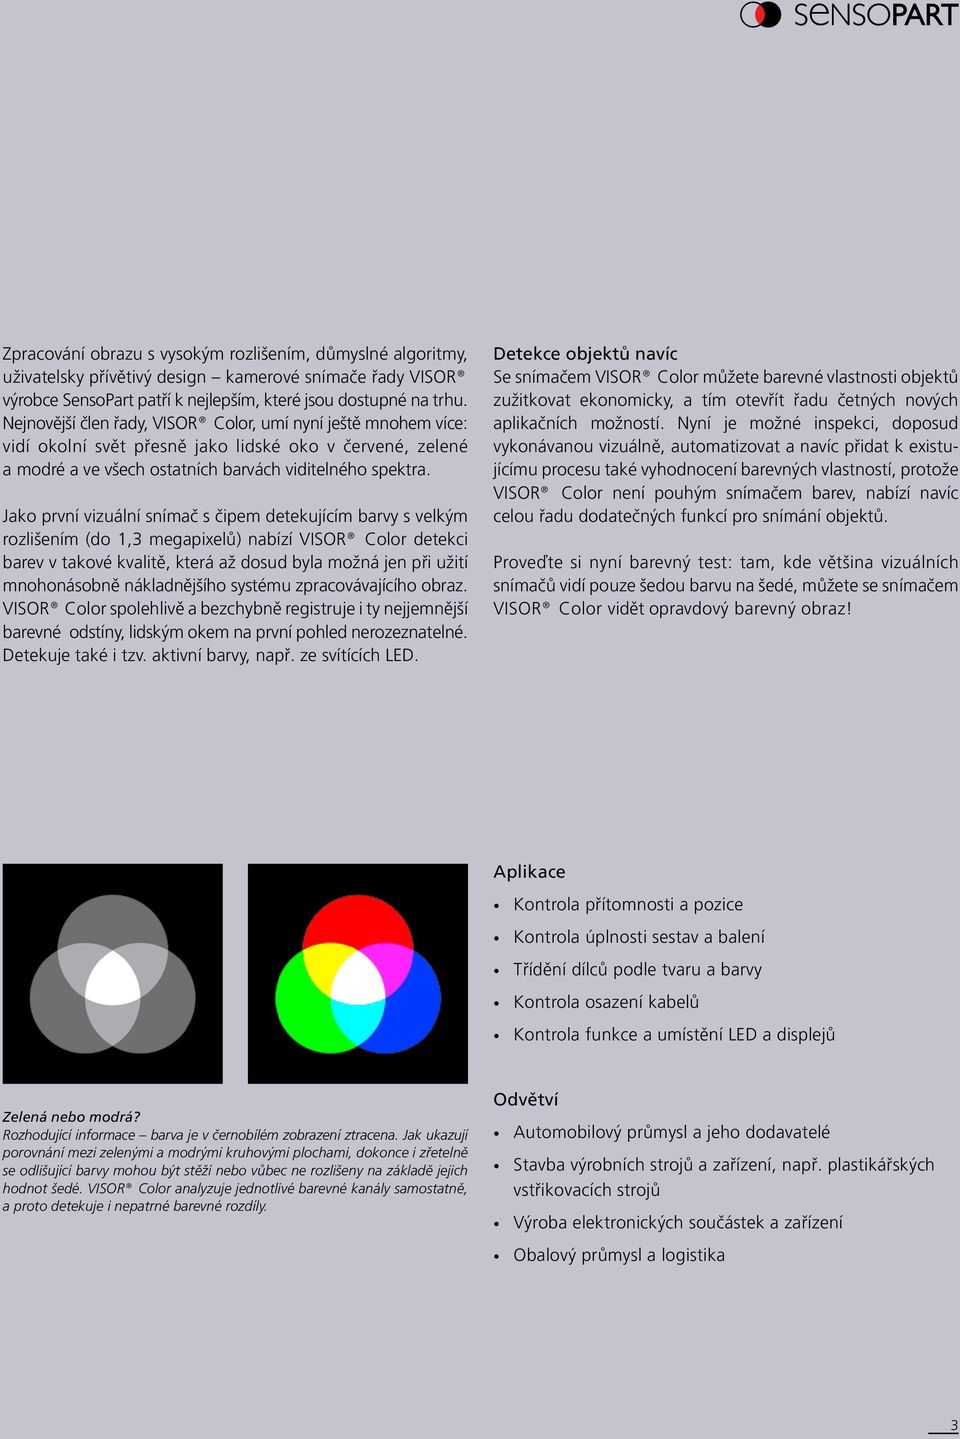 Jako první vizuální snímač s čipem detekujícím barvy s velkým rozlišením (do 1,3 megapixelů) nabízí VISOR Color detekci barev v takové kvalitě, která až dosud byla možná jen při užití mnohonásobně